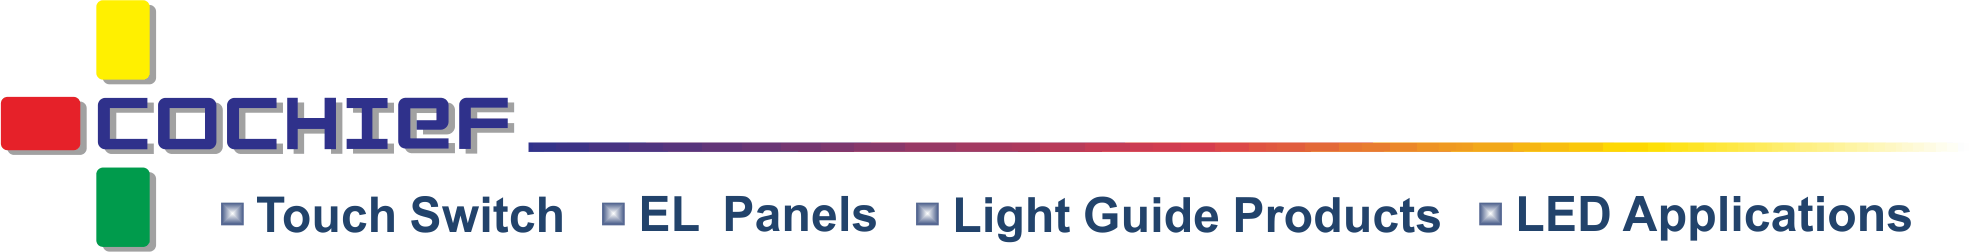 皓智企業股份有限公司 - 静電容量式スマートライトエフェクトタッチモジュール、薄膜タッチフィルム、冷光、ライトガイドの開発・設計メーカー。